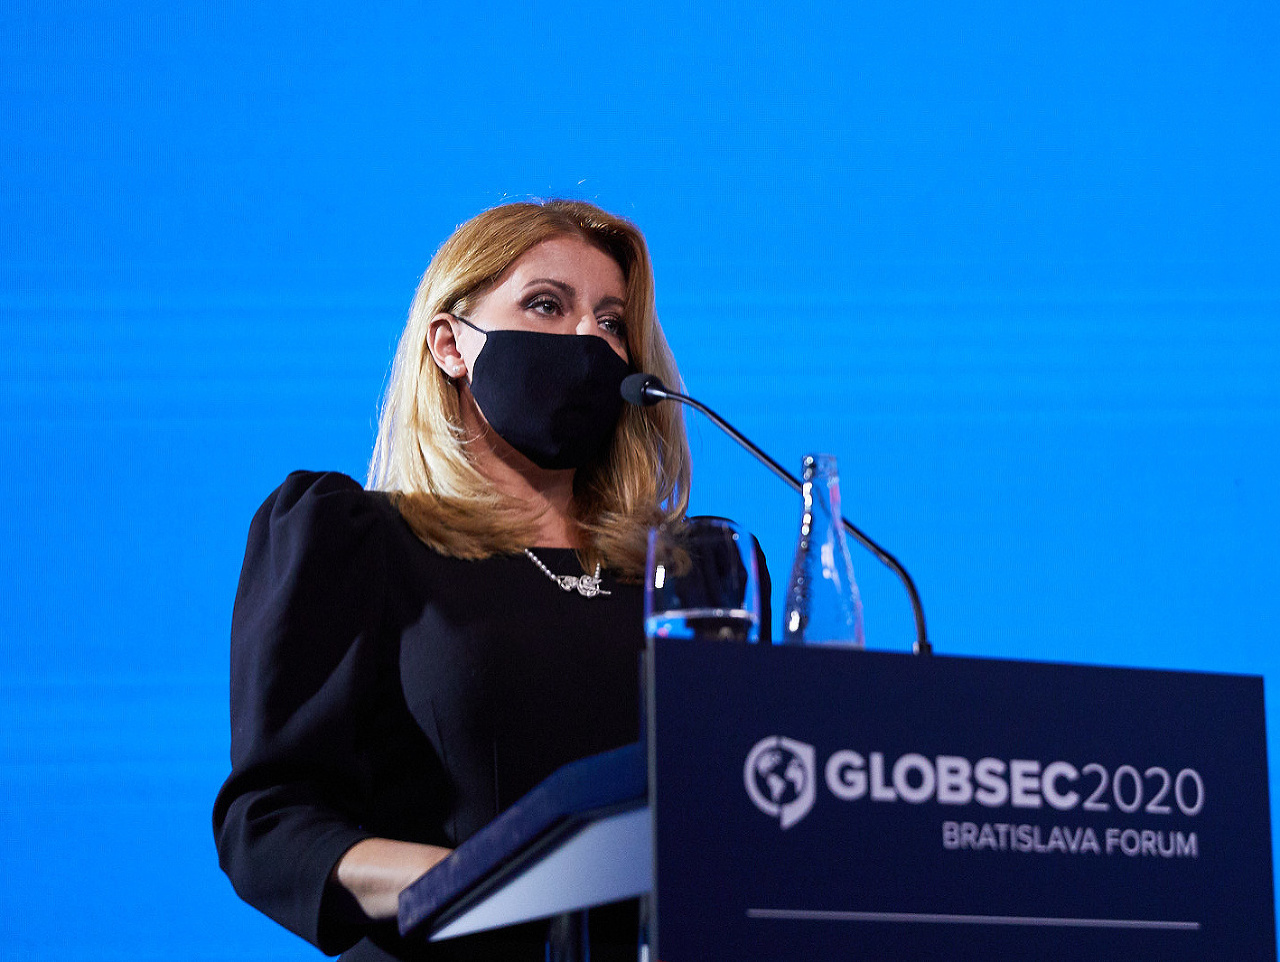 Prezidentka Zuzana Čaputová počas príhovoru na konferencii Globsec Bratislava fórum 2020.